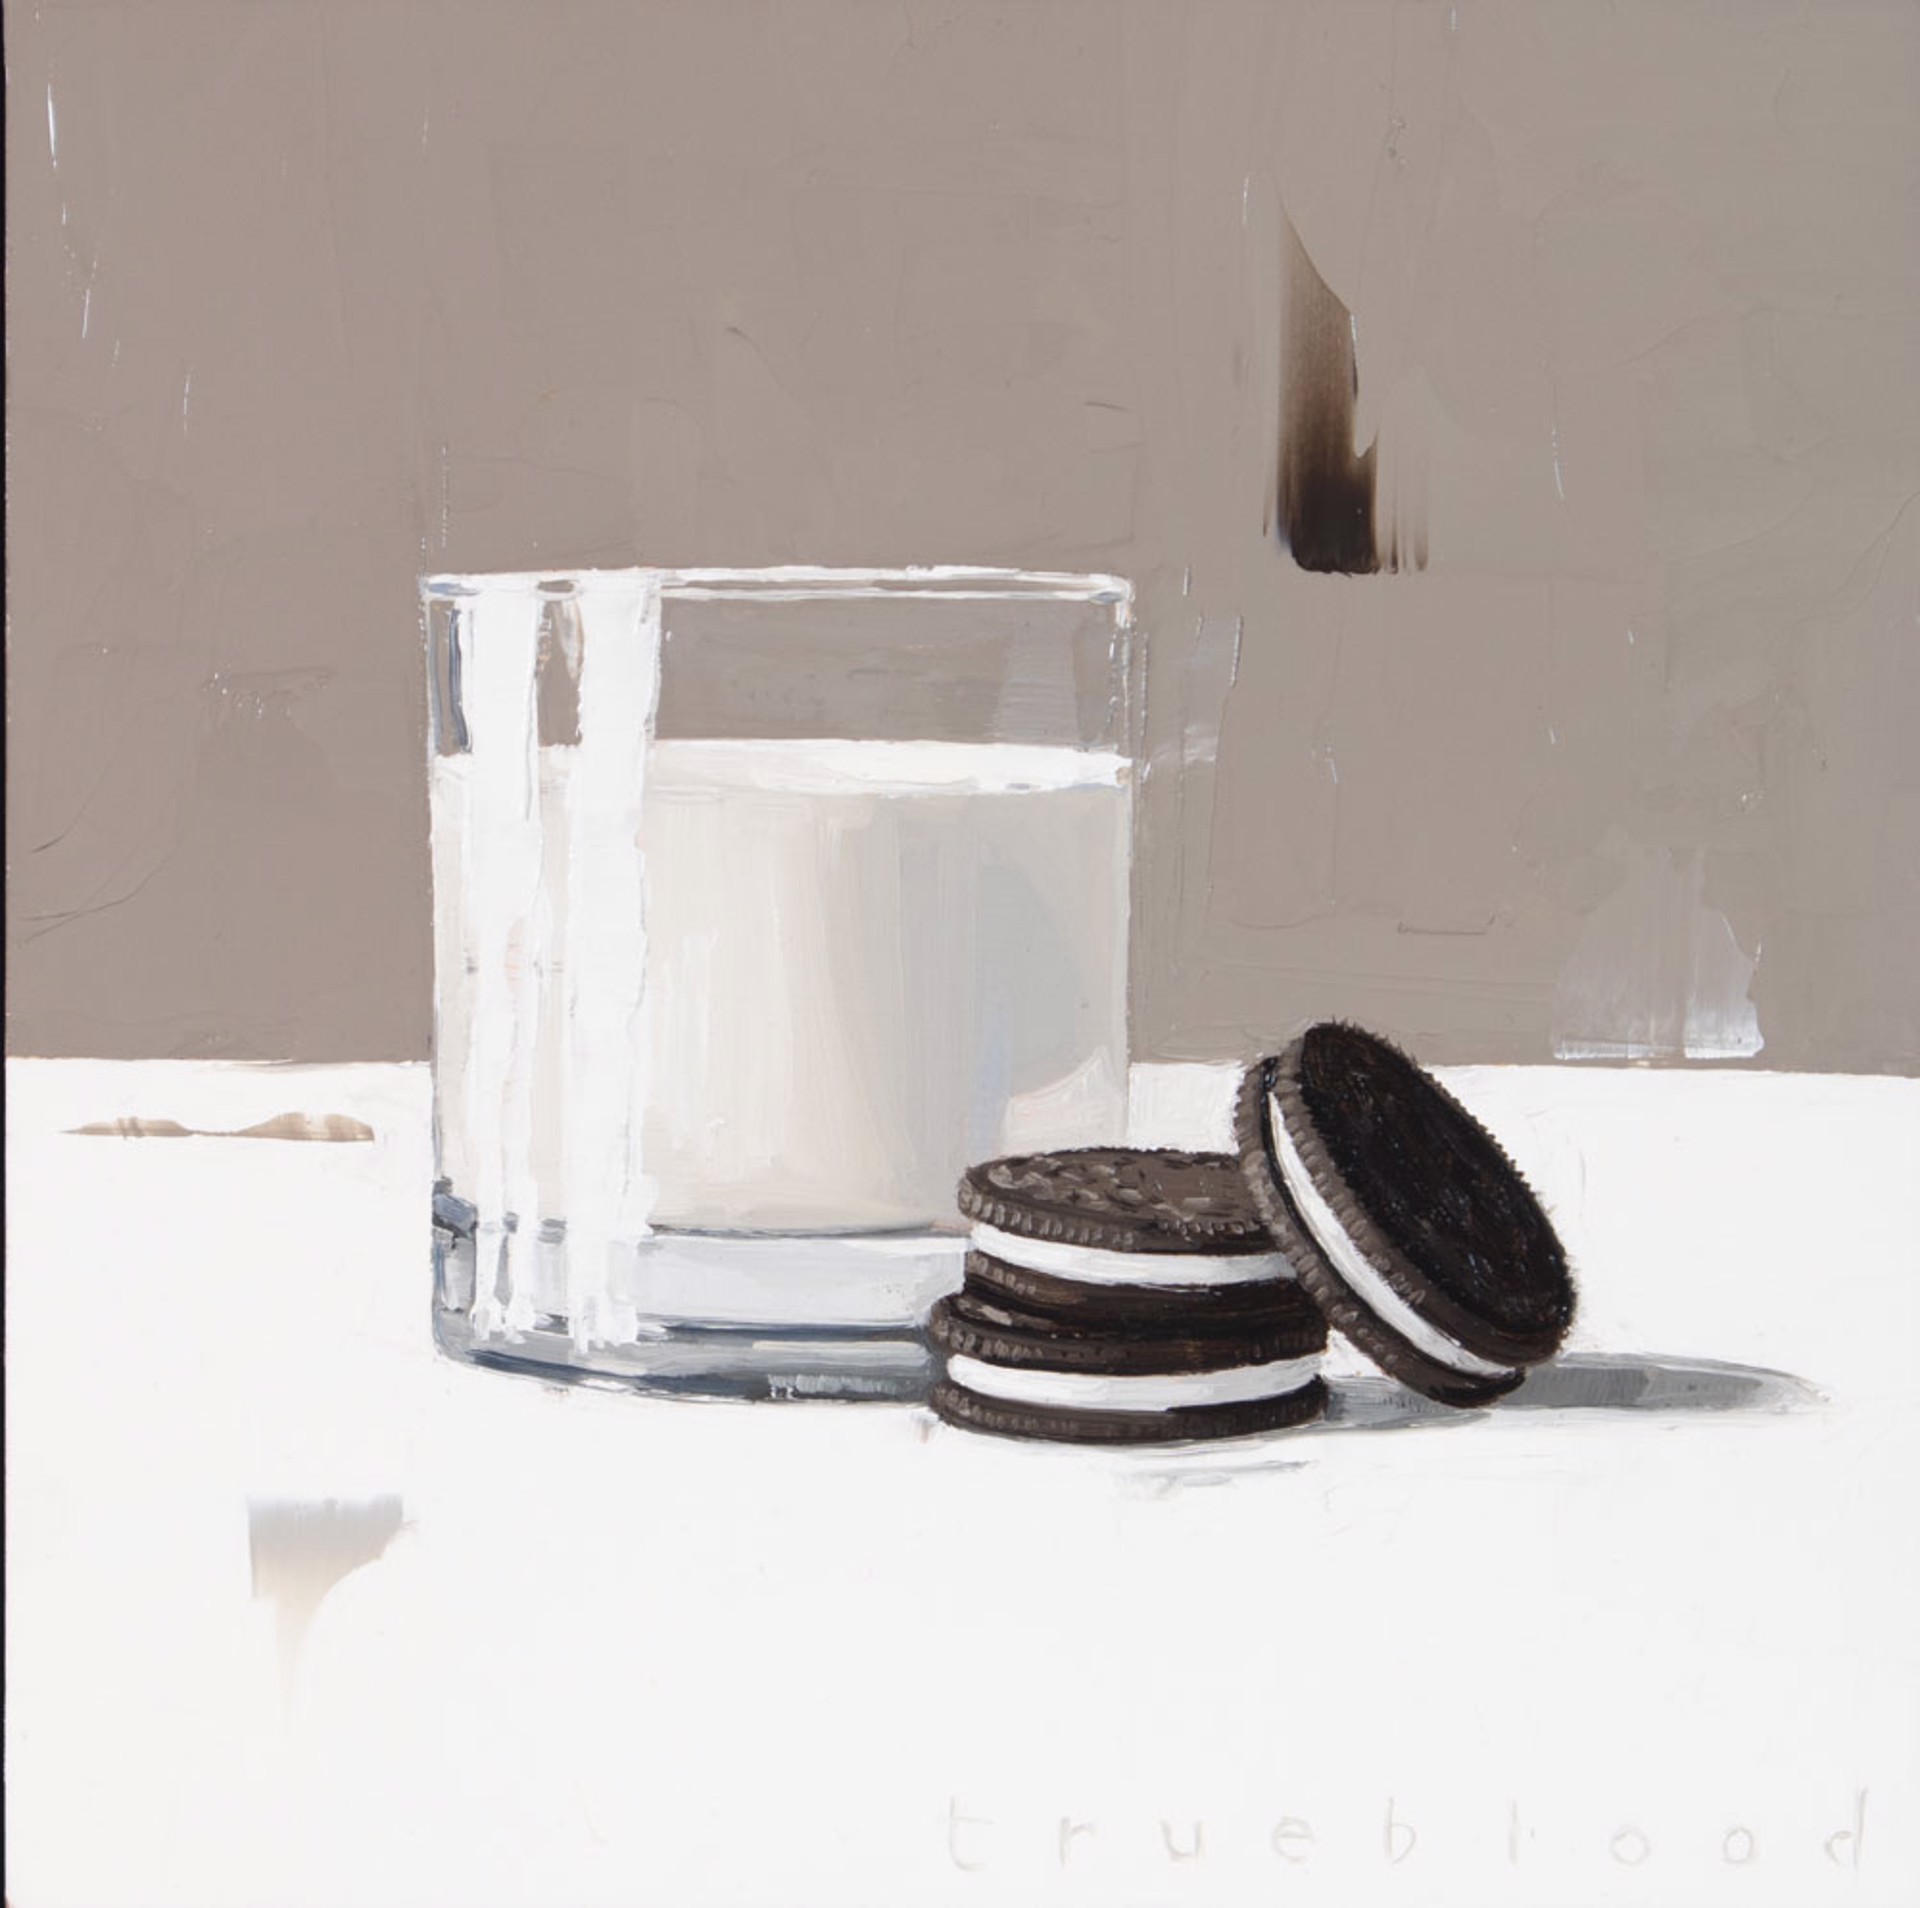 Milk and Cookies by Megan Trueblood